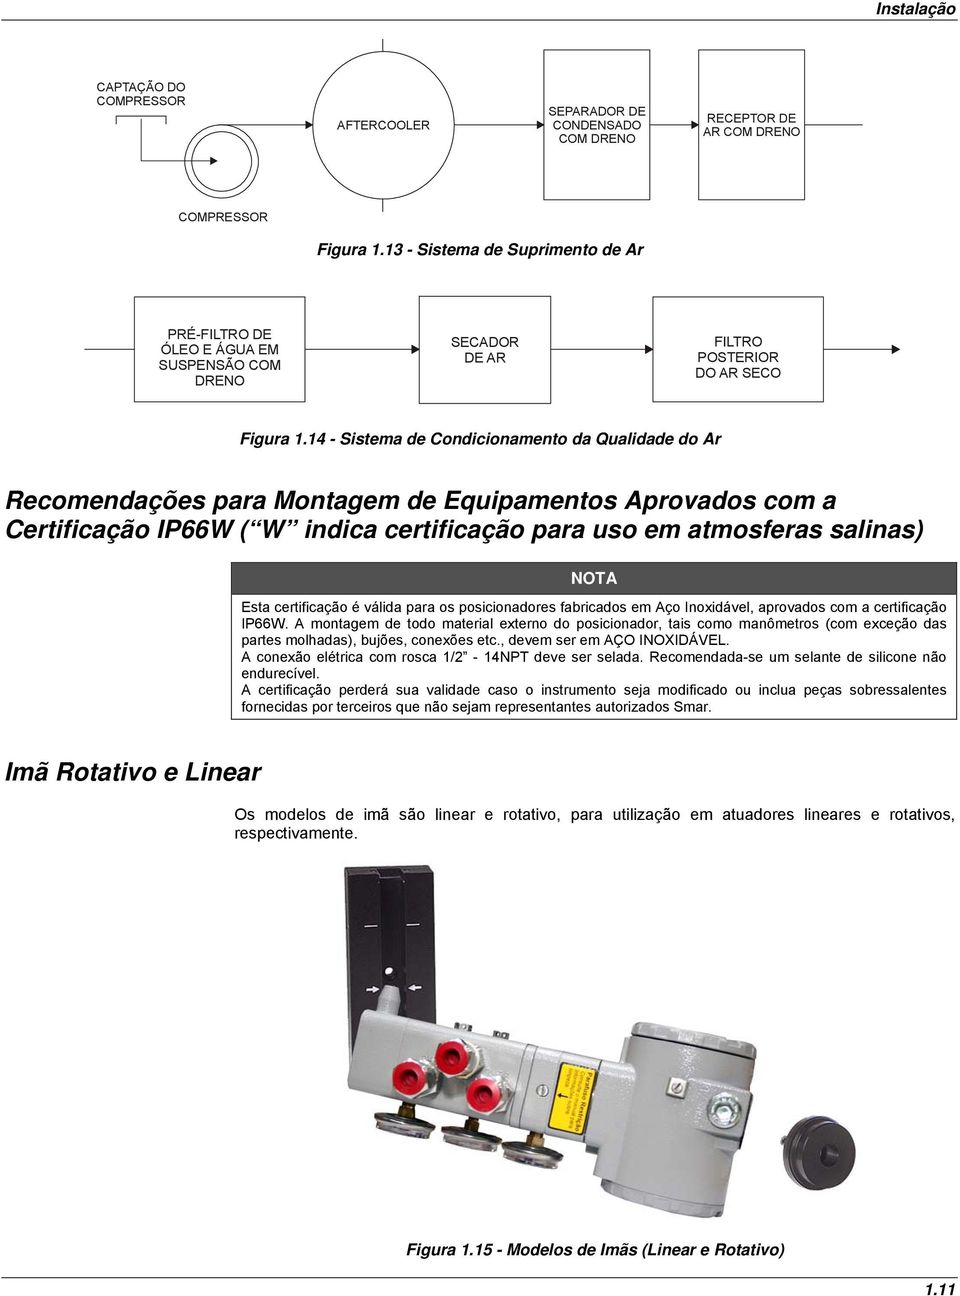 14 - Sistema de Condicionamento da Qualidade do Ar Recomendações para Montagem de Equipamentos Aprovados com a Certificação IP66W ( W indica certificação para uso em atmosferas salinas) NOTA Esta